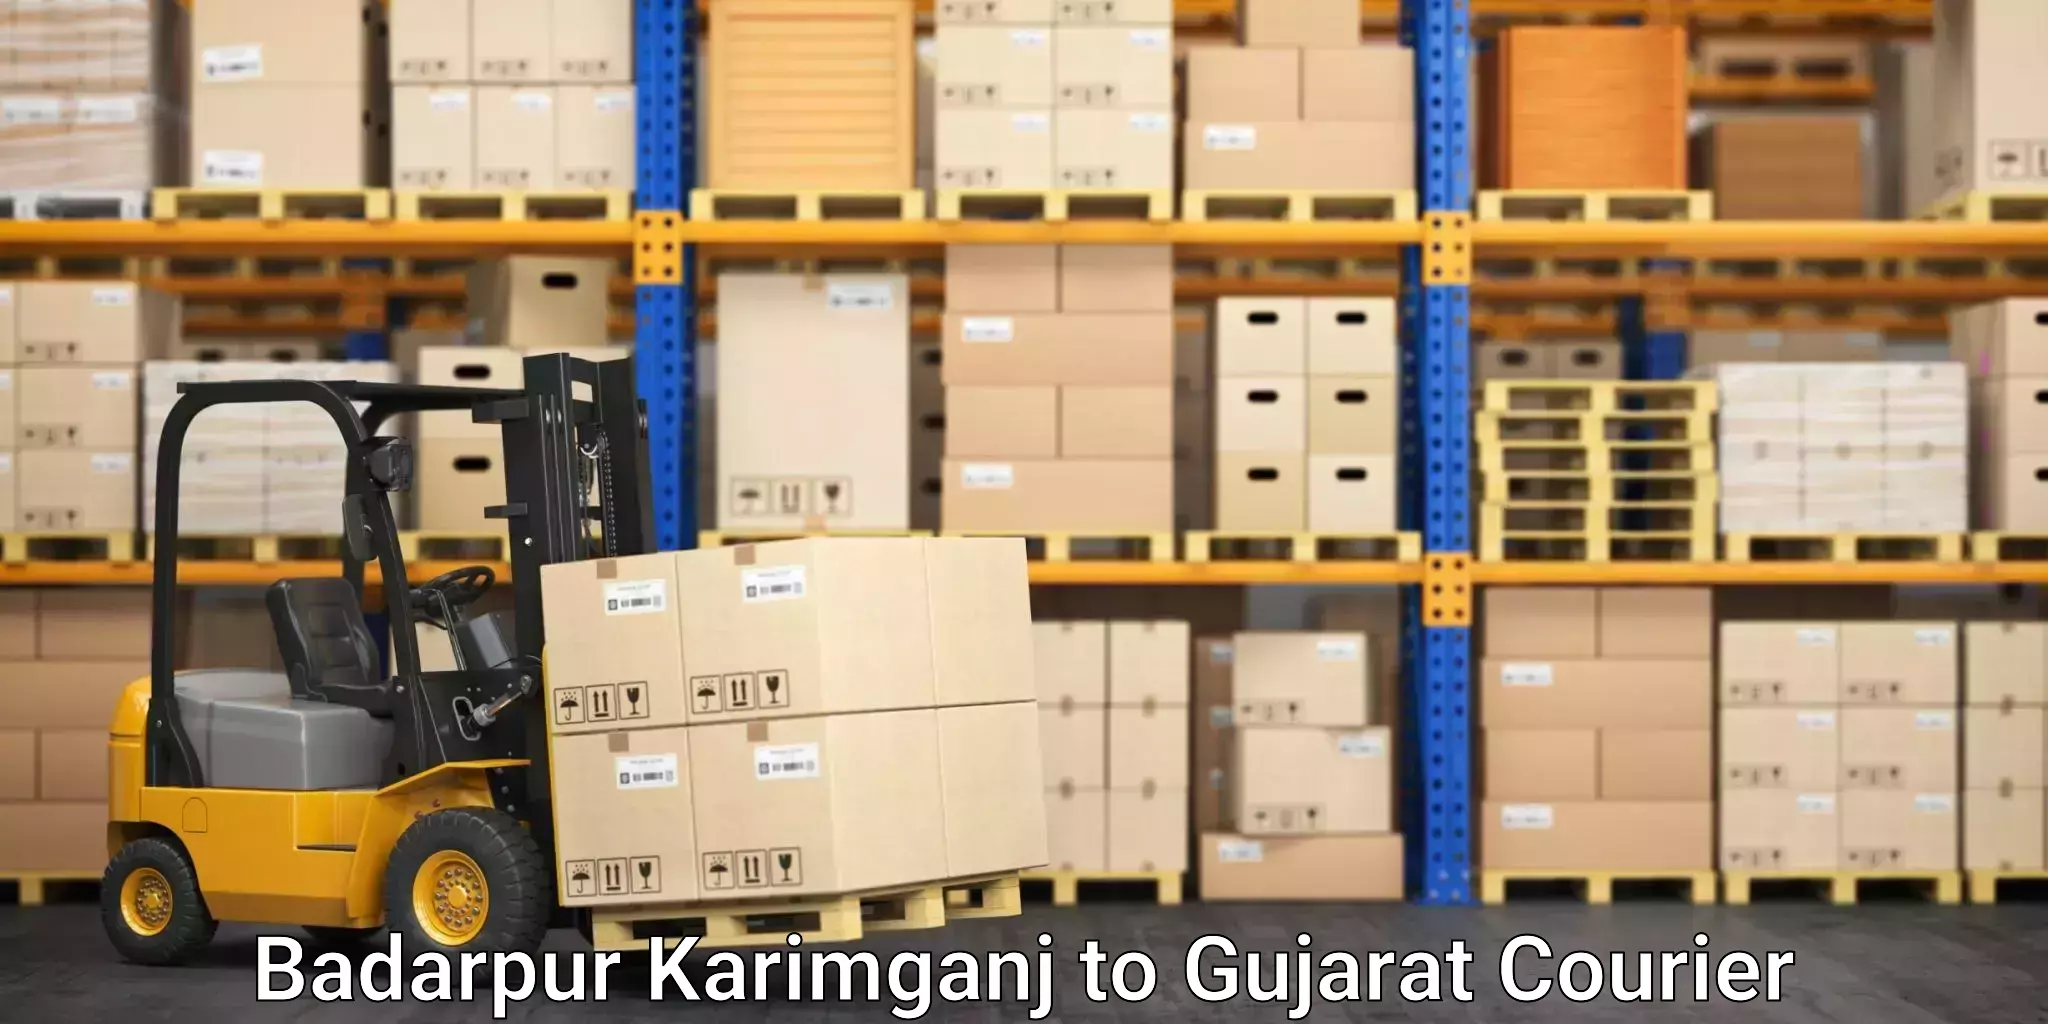 Tracking updates Badarpur Karimganj to Gujarat